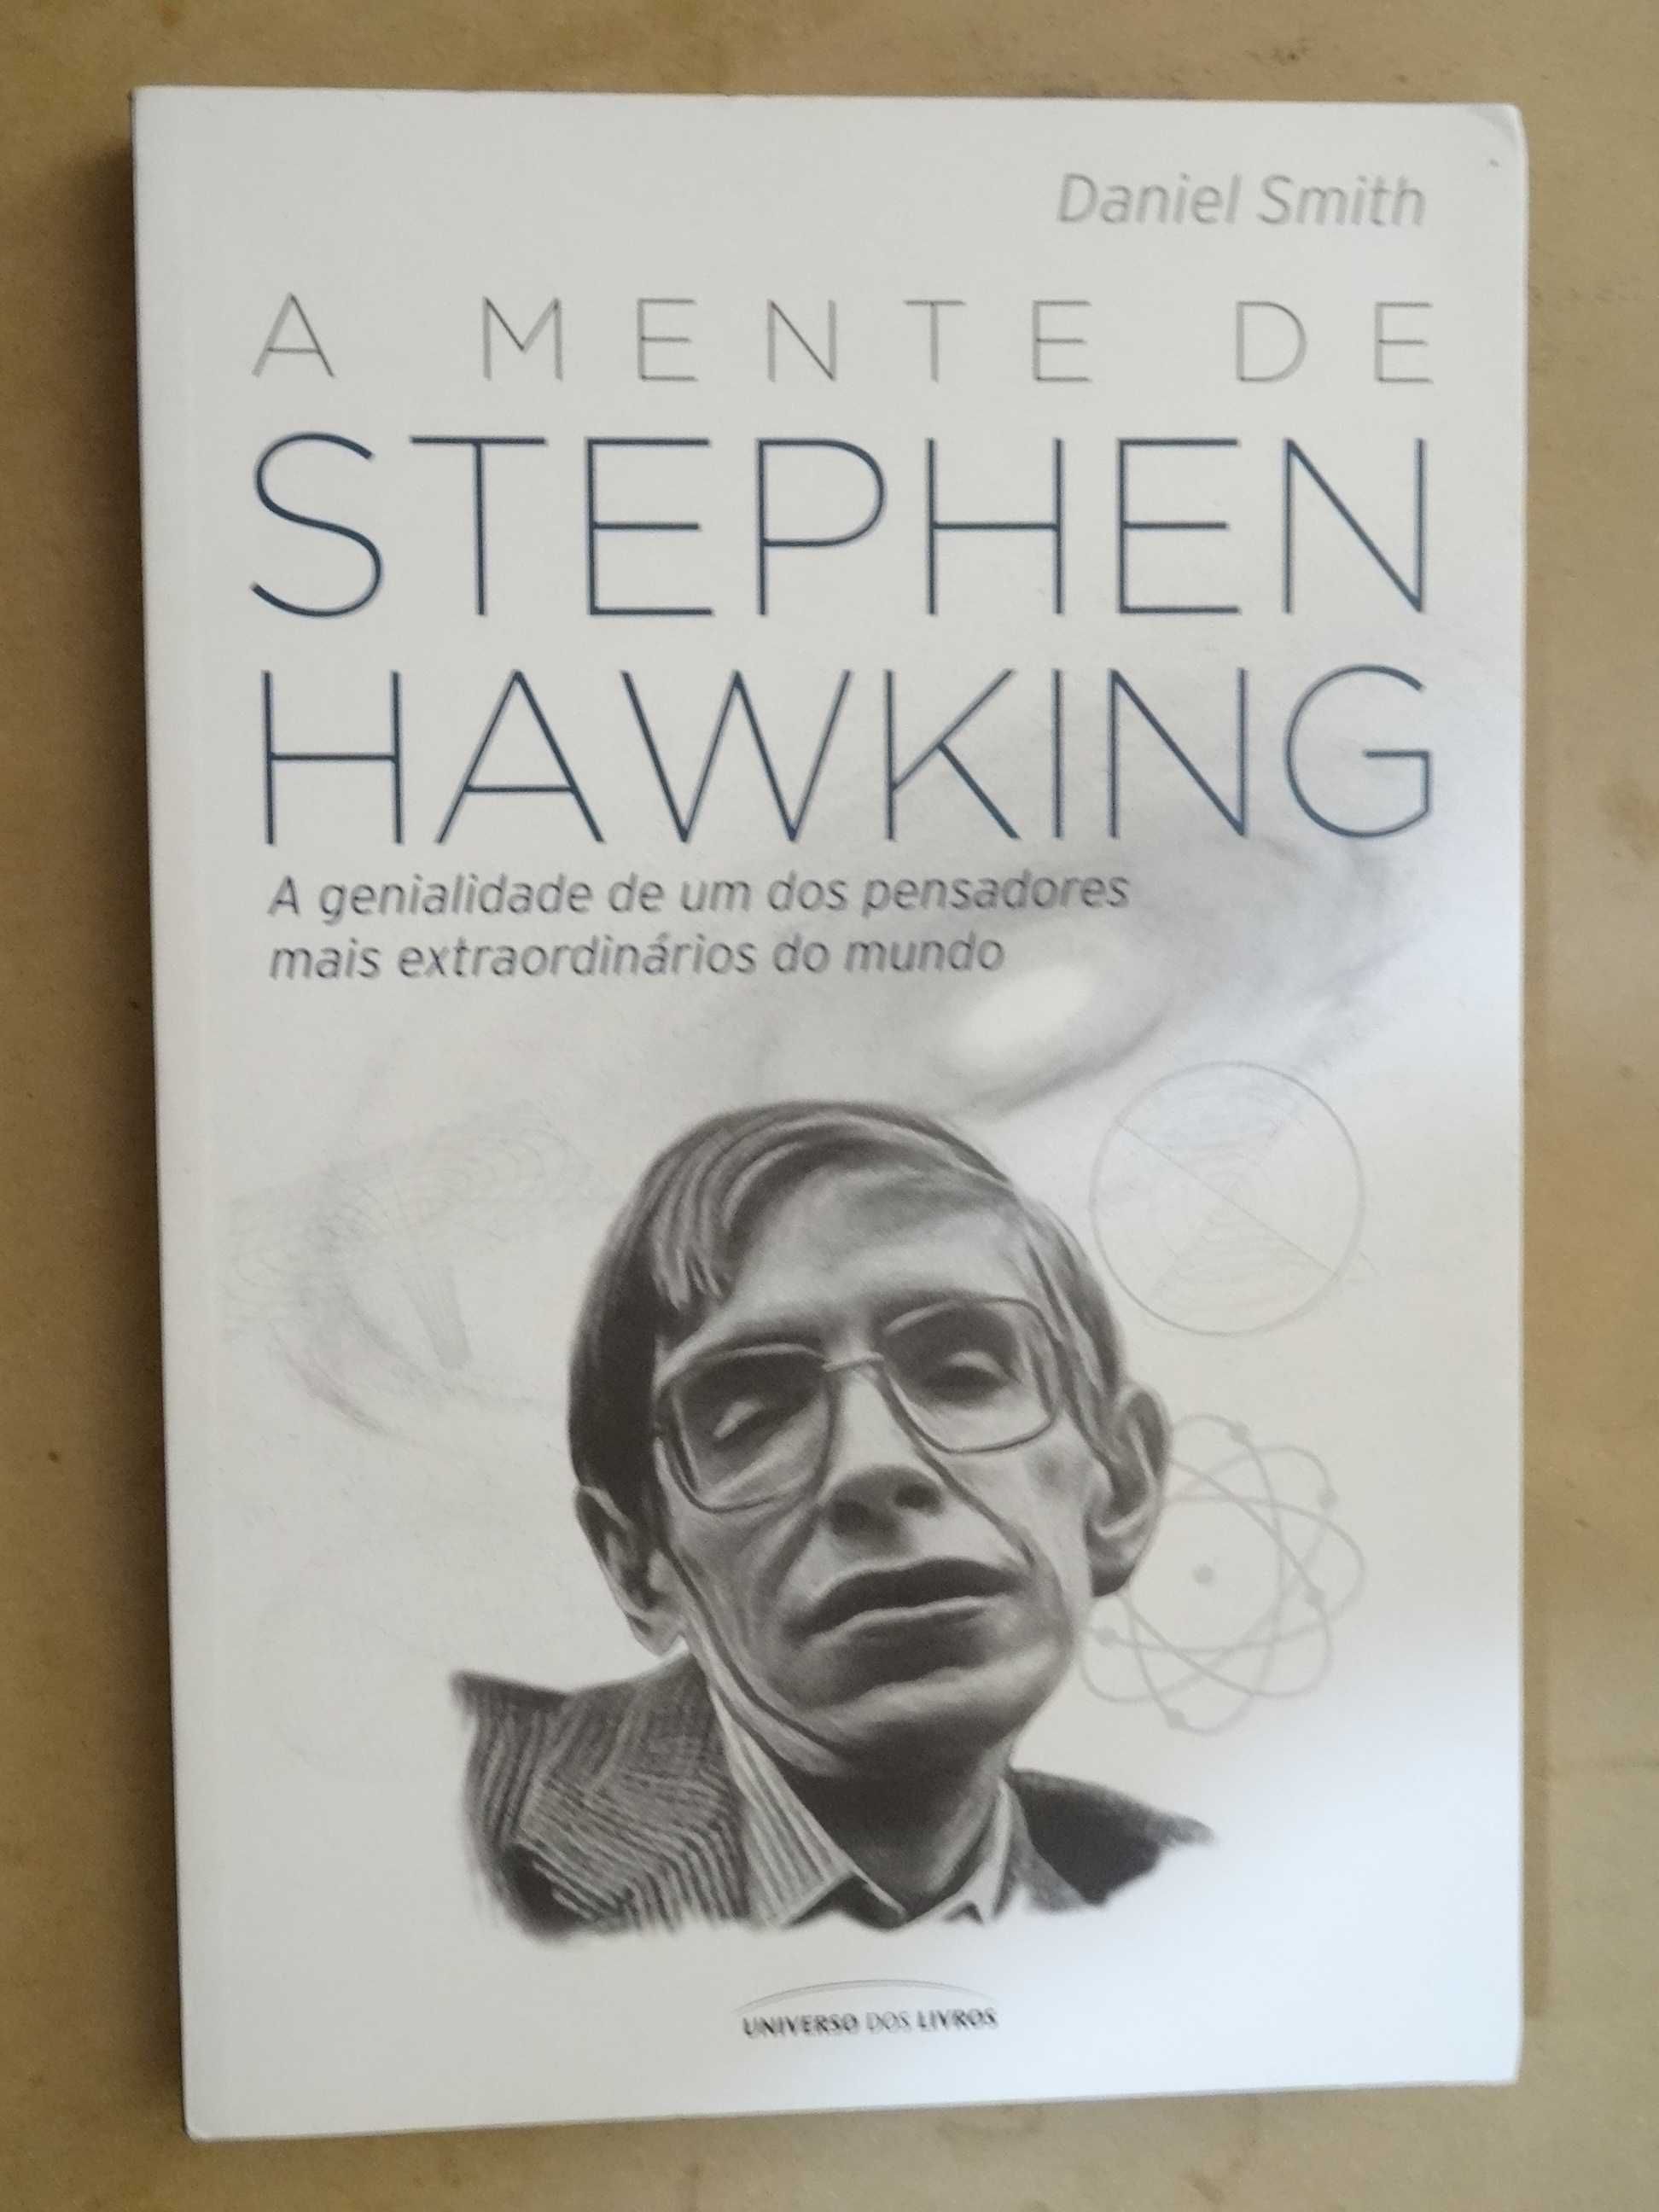 A Mente de Stephen Hawking de Daniel Smith